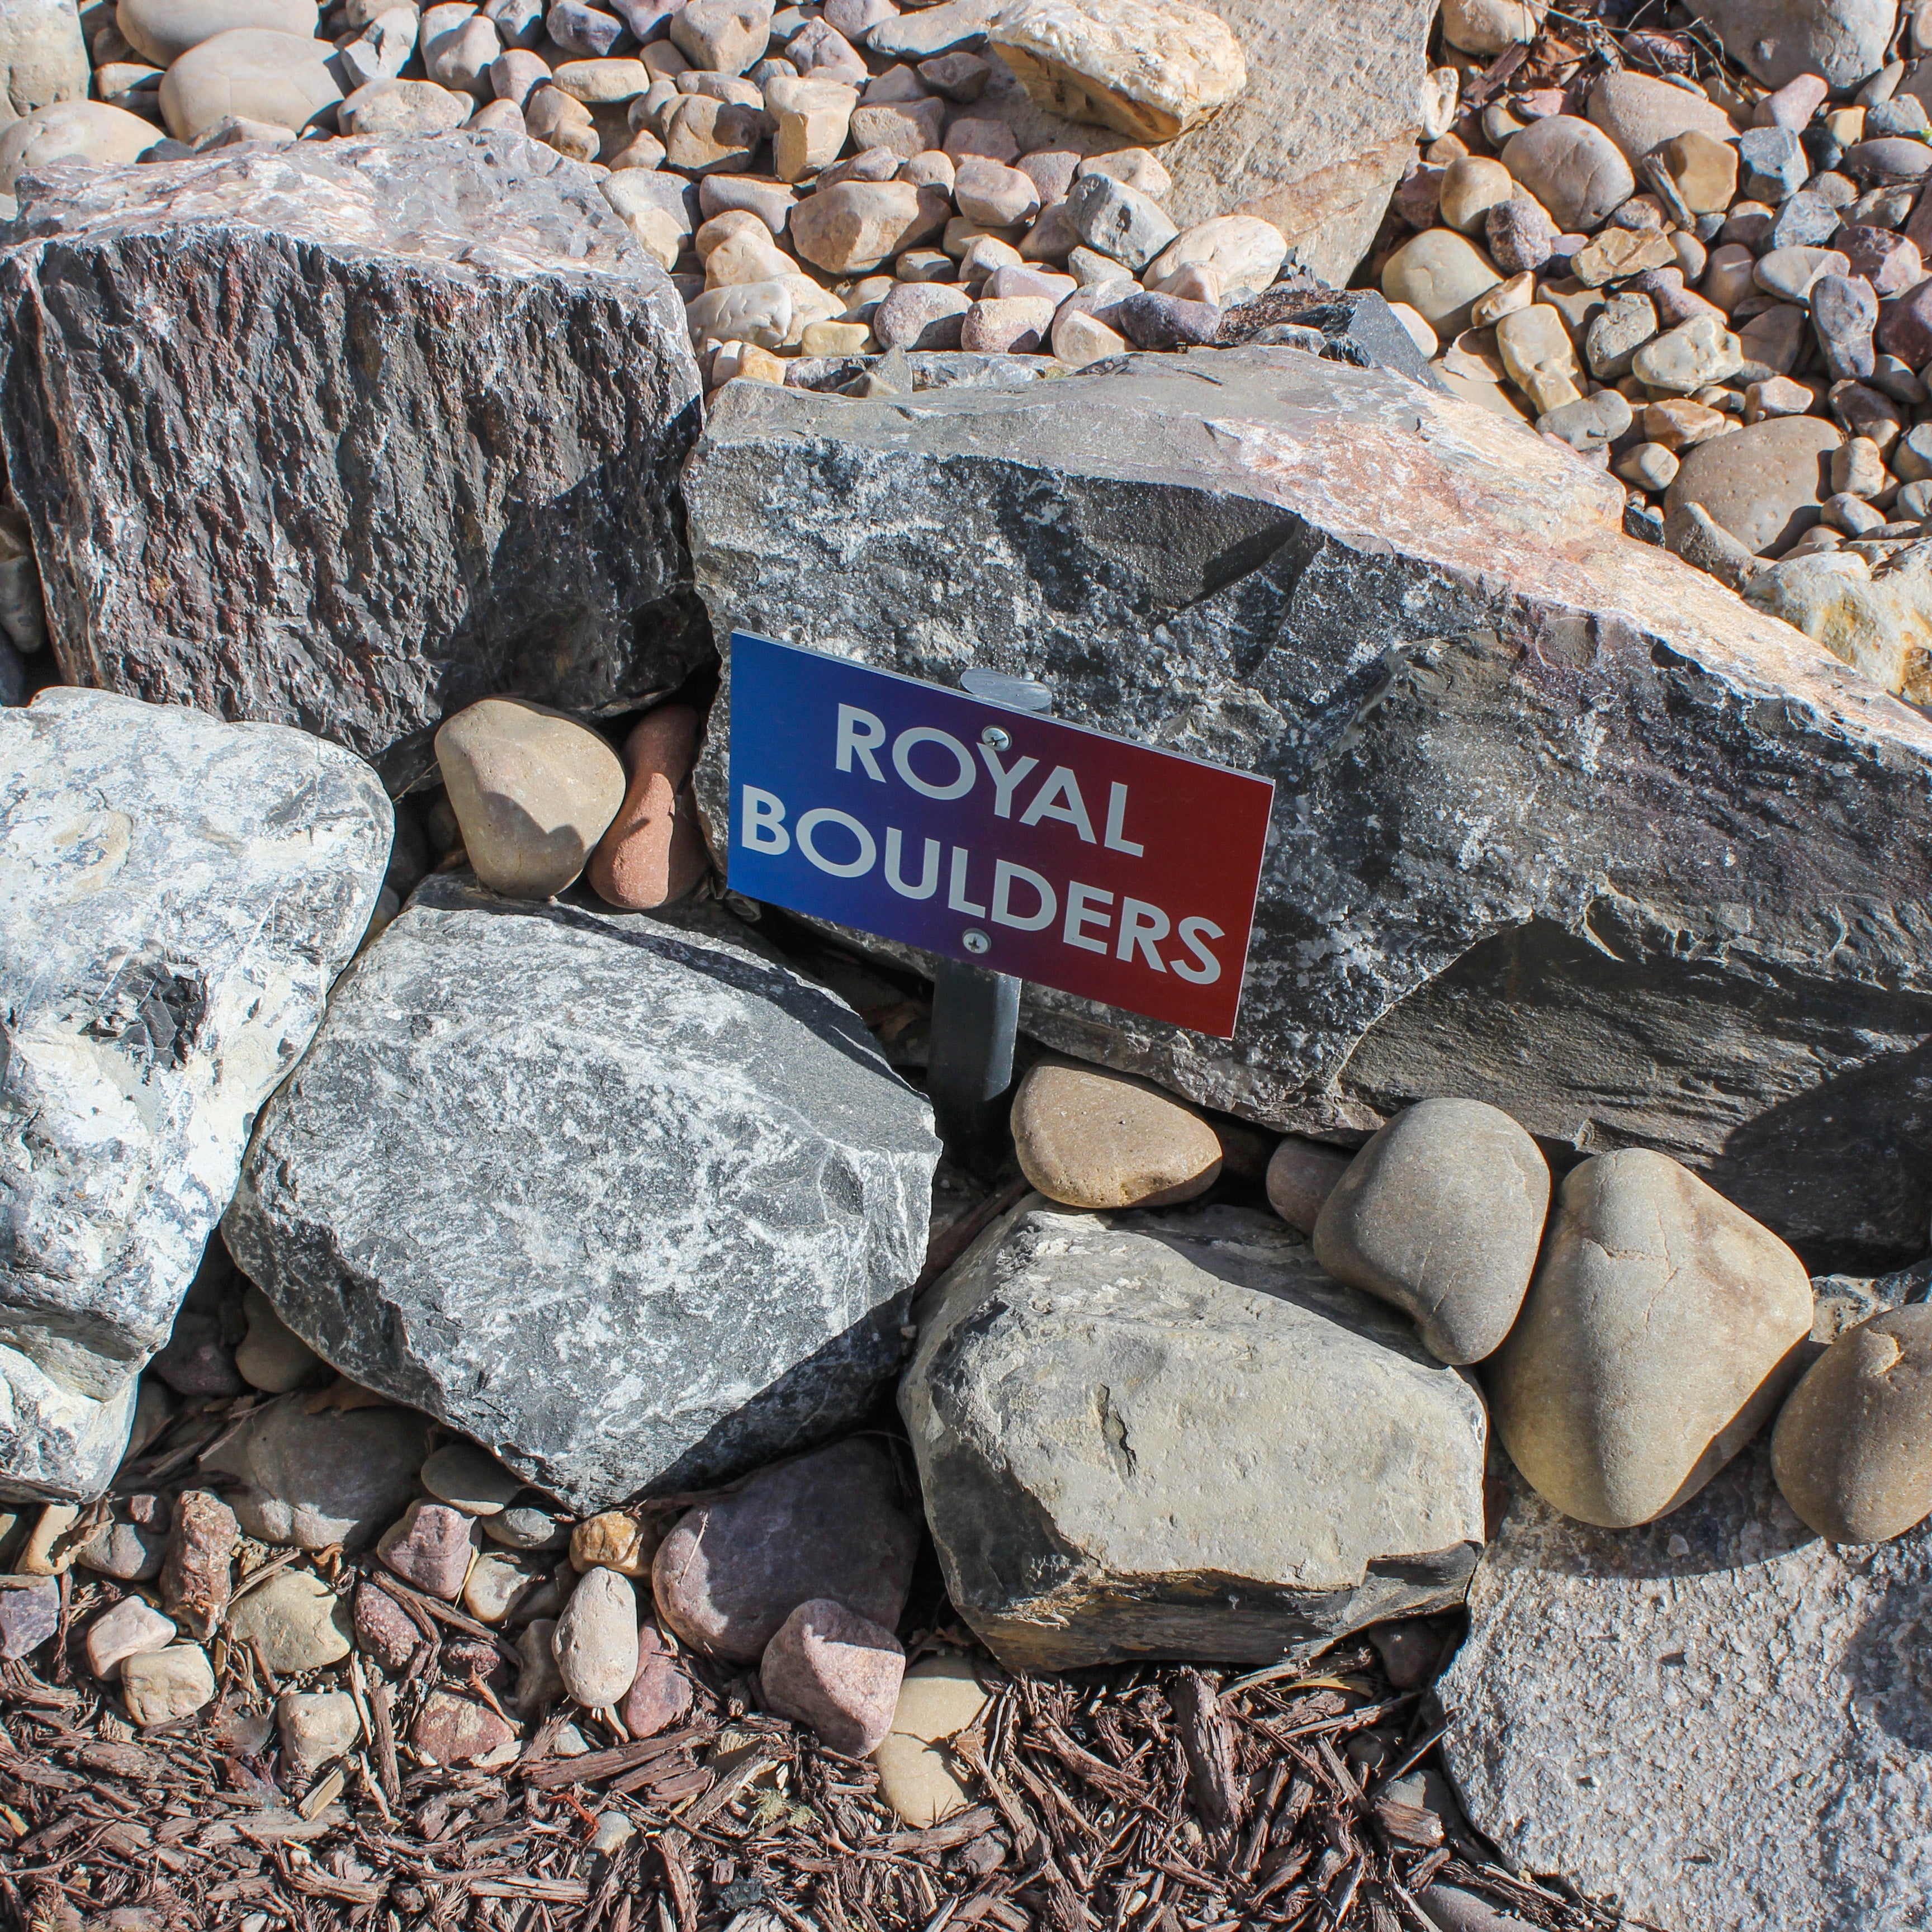 Royal Boulders